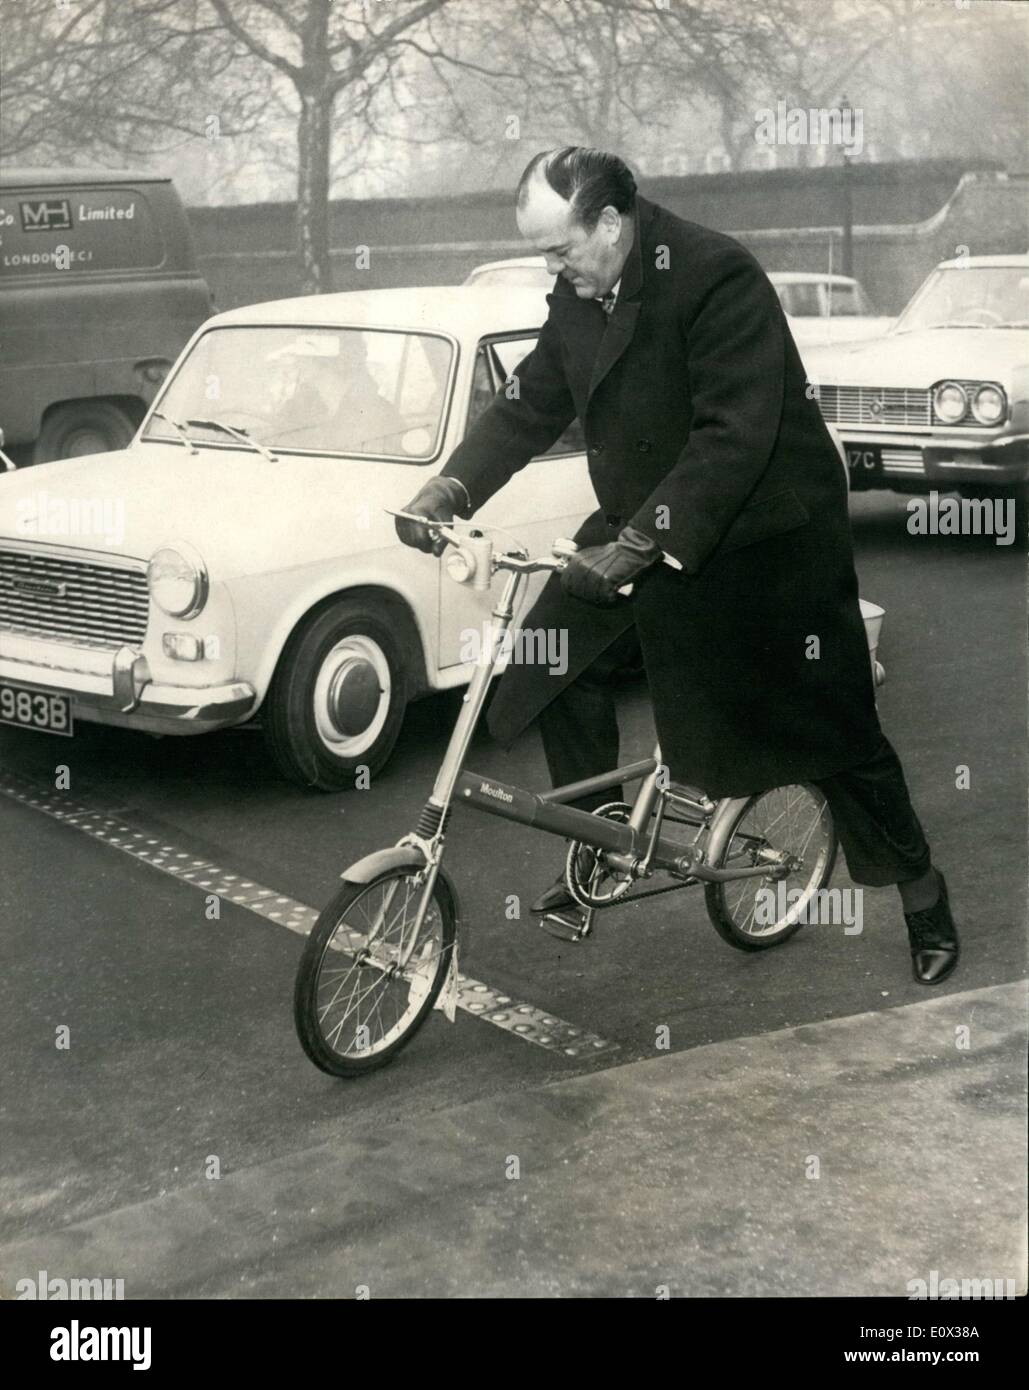 3. März 1965 - Tory M. P. Parks seine 'Bike'-bei R.A.C.: Herr Walter Loveys Tory M.P. für Chichester Sussex-ist jeden Morgen Radfahren zwischen dem House Of Commons und dem R.A.C.-Club zu sehen- und parks im Club. Herr Loveys findet den Zyklus so viel einfacher zu steuern-Park etc. in London- und die Zyklus-Packs so ordentlich in seinem Jaguar-wann hat er eine längere Reise machen. Das Foto zeigt. Herr Walter Loveys in mitten der Verkehr-wie er heute zwischen dem House Of Commons und dem R.A.C.-Club-Zyklen. Stockfoto